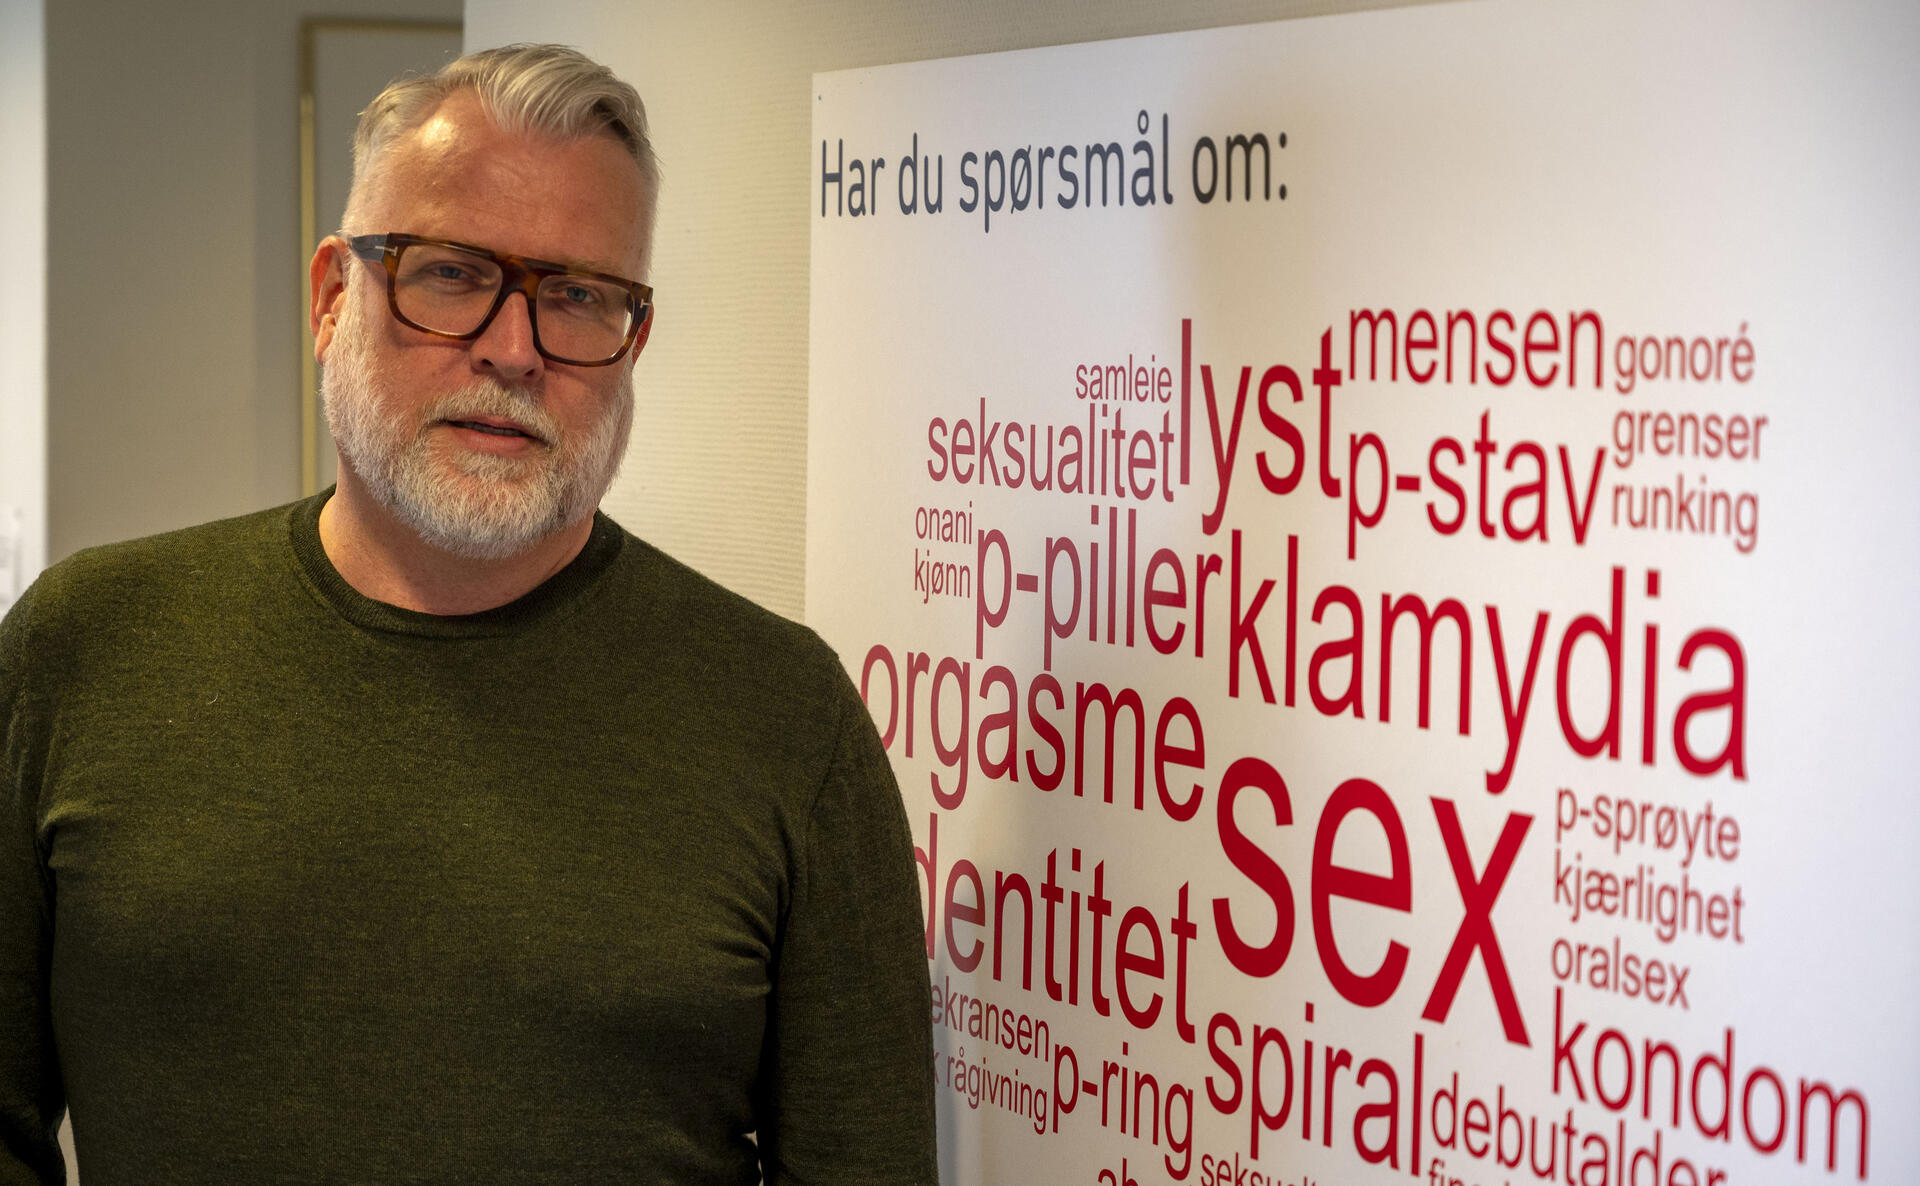 Staute norske arbeidspeniser trenger ikke Viagra bilde